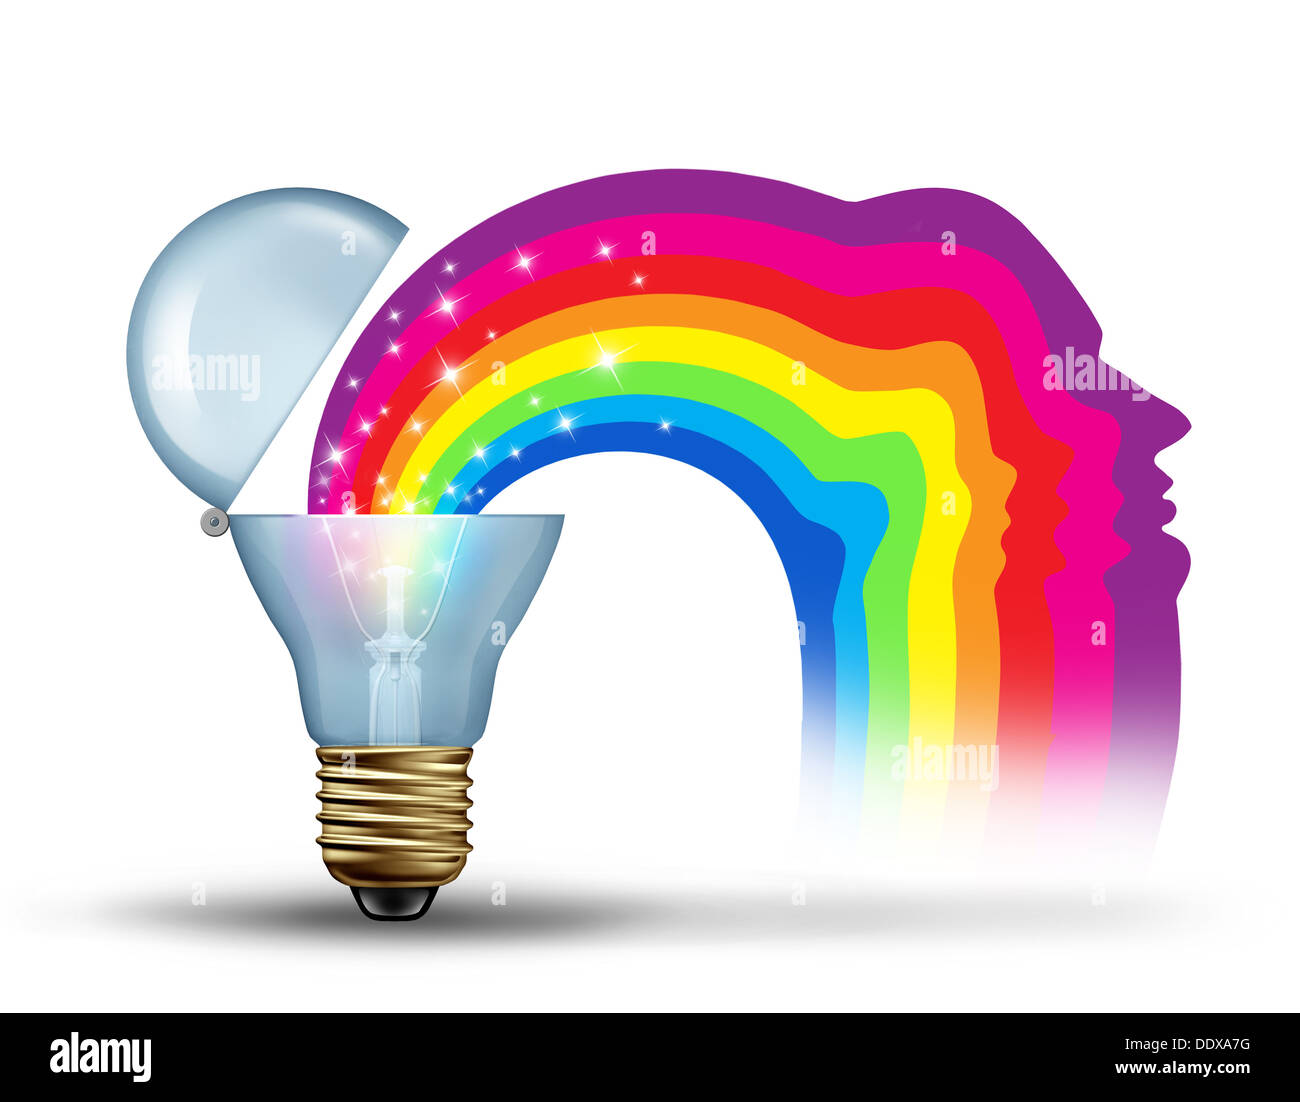 Die Kraft der Innovation und Freiheit der visionäre Führung als Kreativität Konzept zur Entfesselung und neue Ideen zum Ausdruck zu bringen, wie eine Glühbirne, die Öffnung für einen funkelnden Regenbogen in der Form eines menschlichen Kopfes auf einem weißen Hintergrund zu offenbaren. Stockfoto